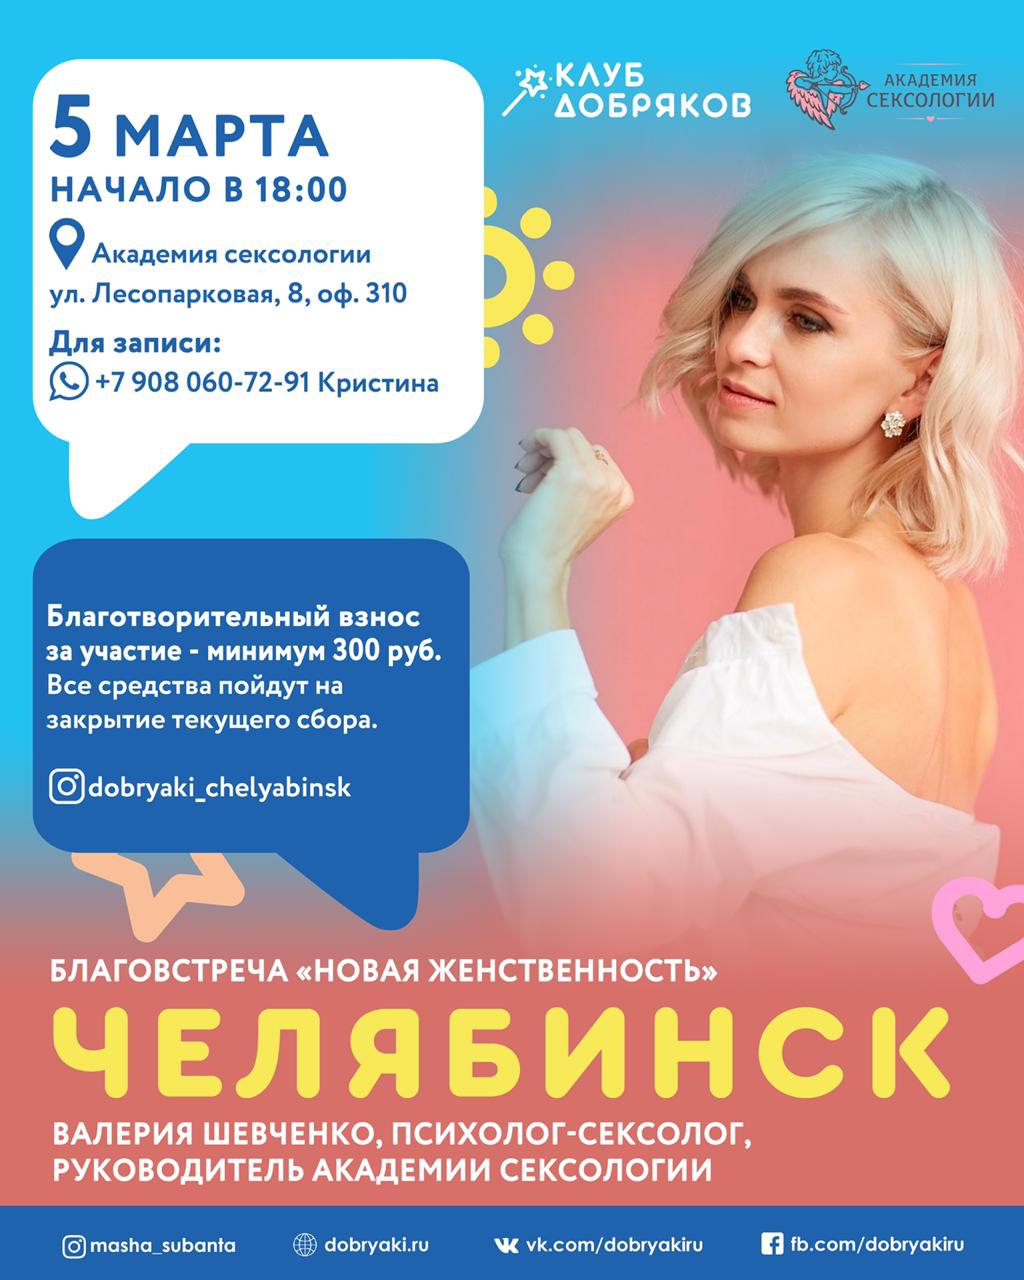 В Челябинске пройдет благовстреча на тему «Новая женственность»